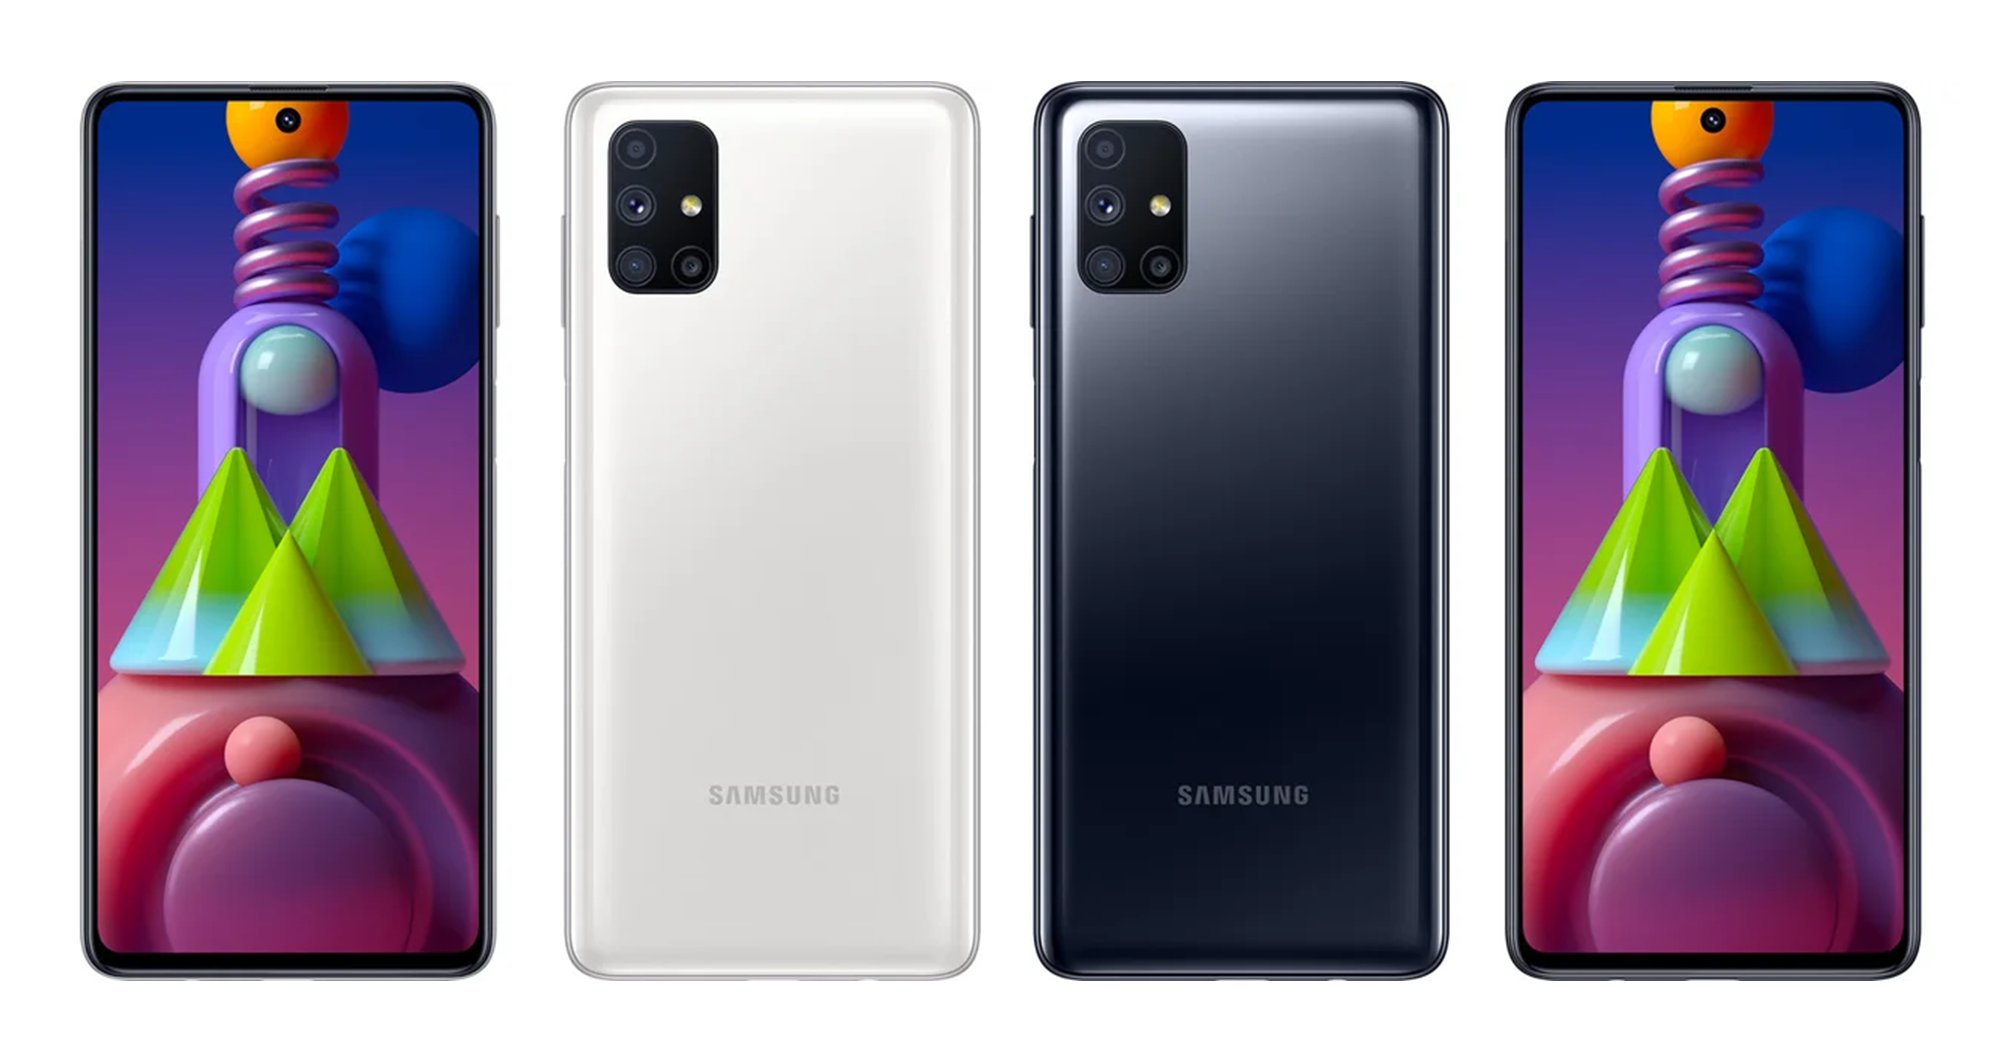 kiedy premiera Samsung Galaxy M51 cena specyfikacja dane techniczne rendery plotki przecieki smartfon bateria 7000 mAh